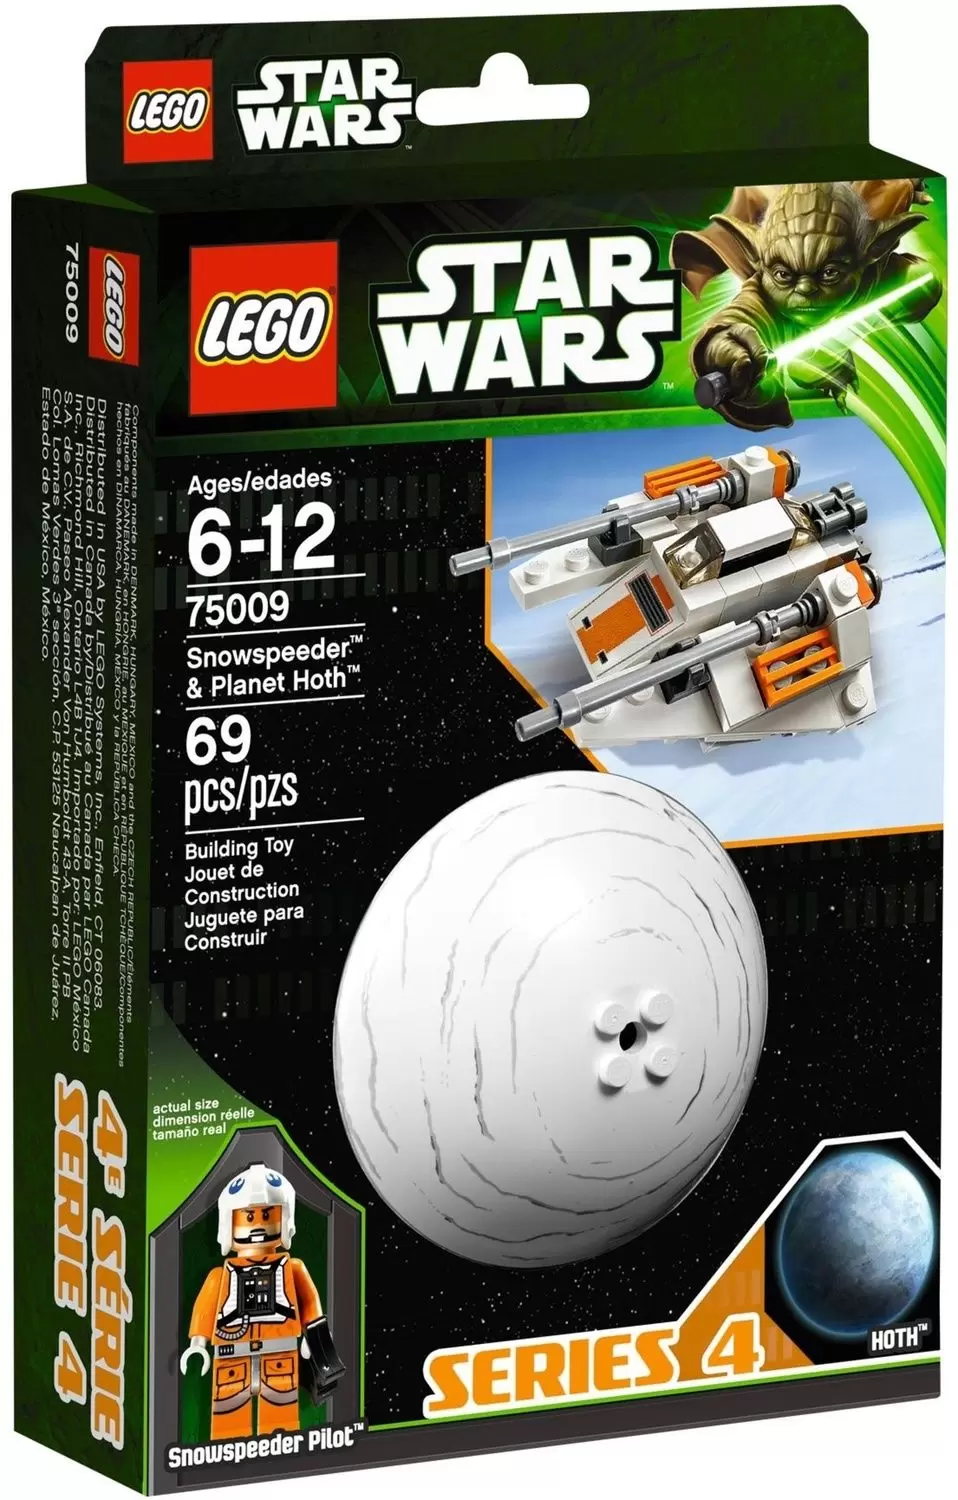 LEGO Star Wars - Snowspeeder & Hoth